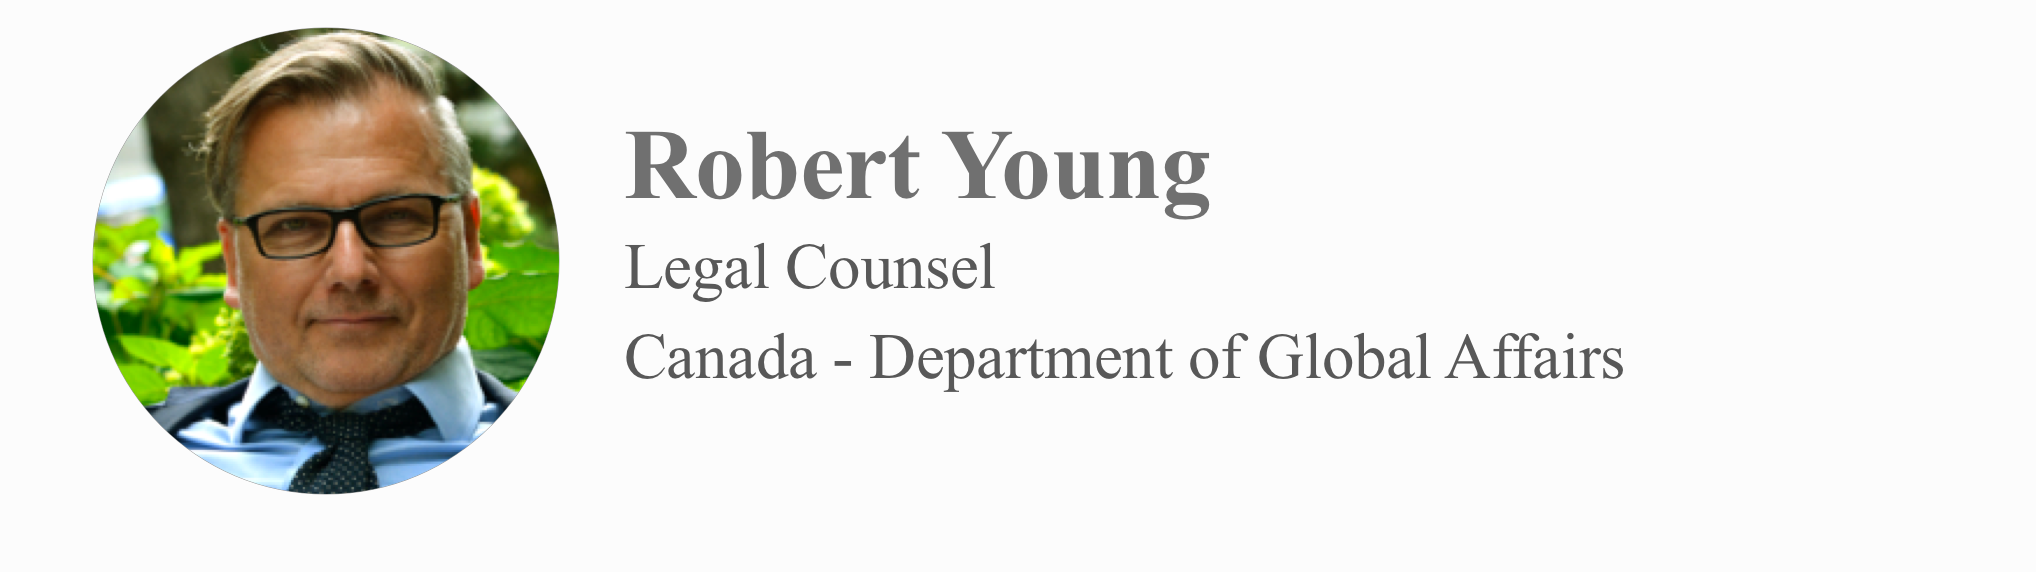 Robert-Young-contact-group.png#asset:118